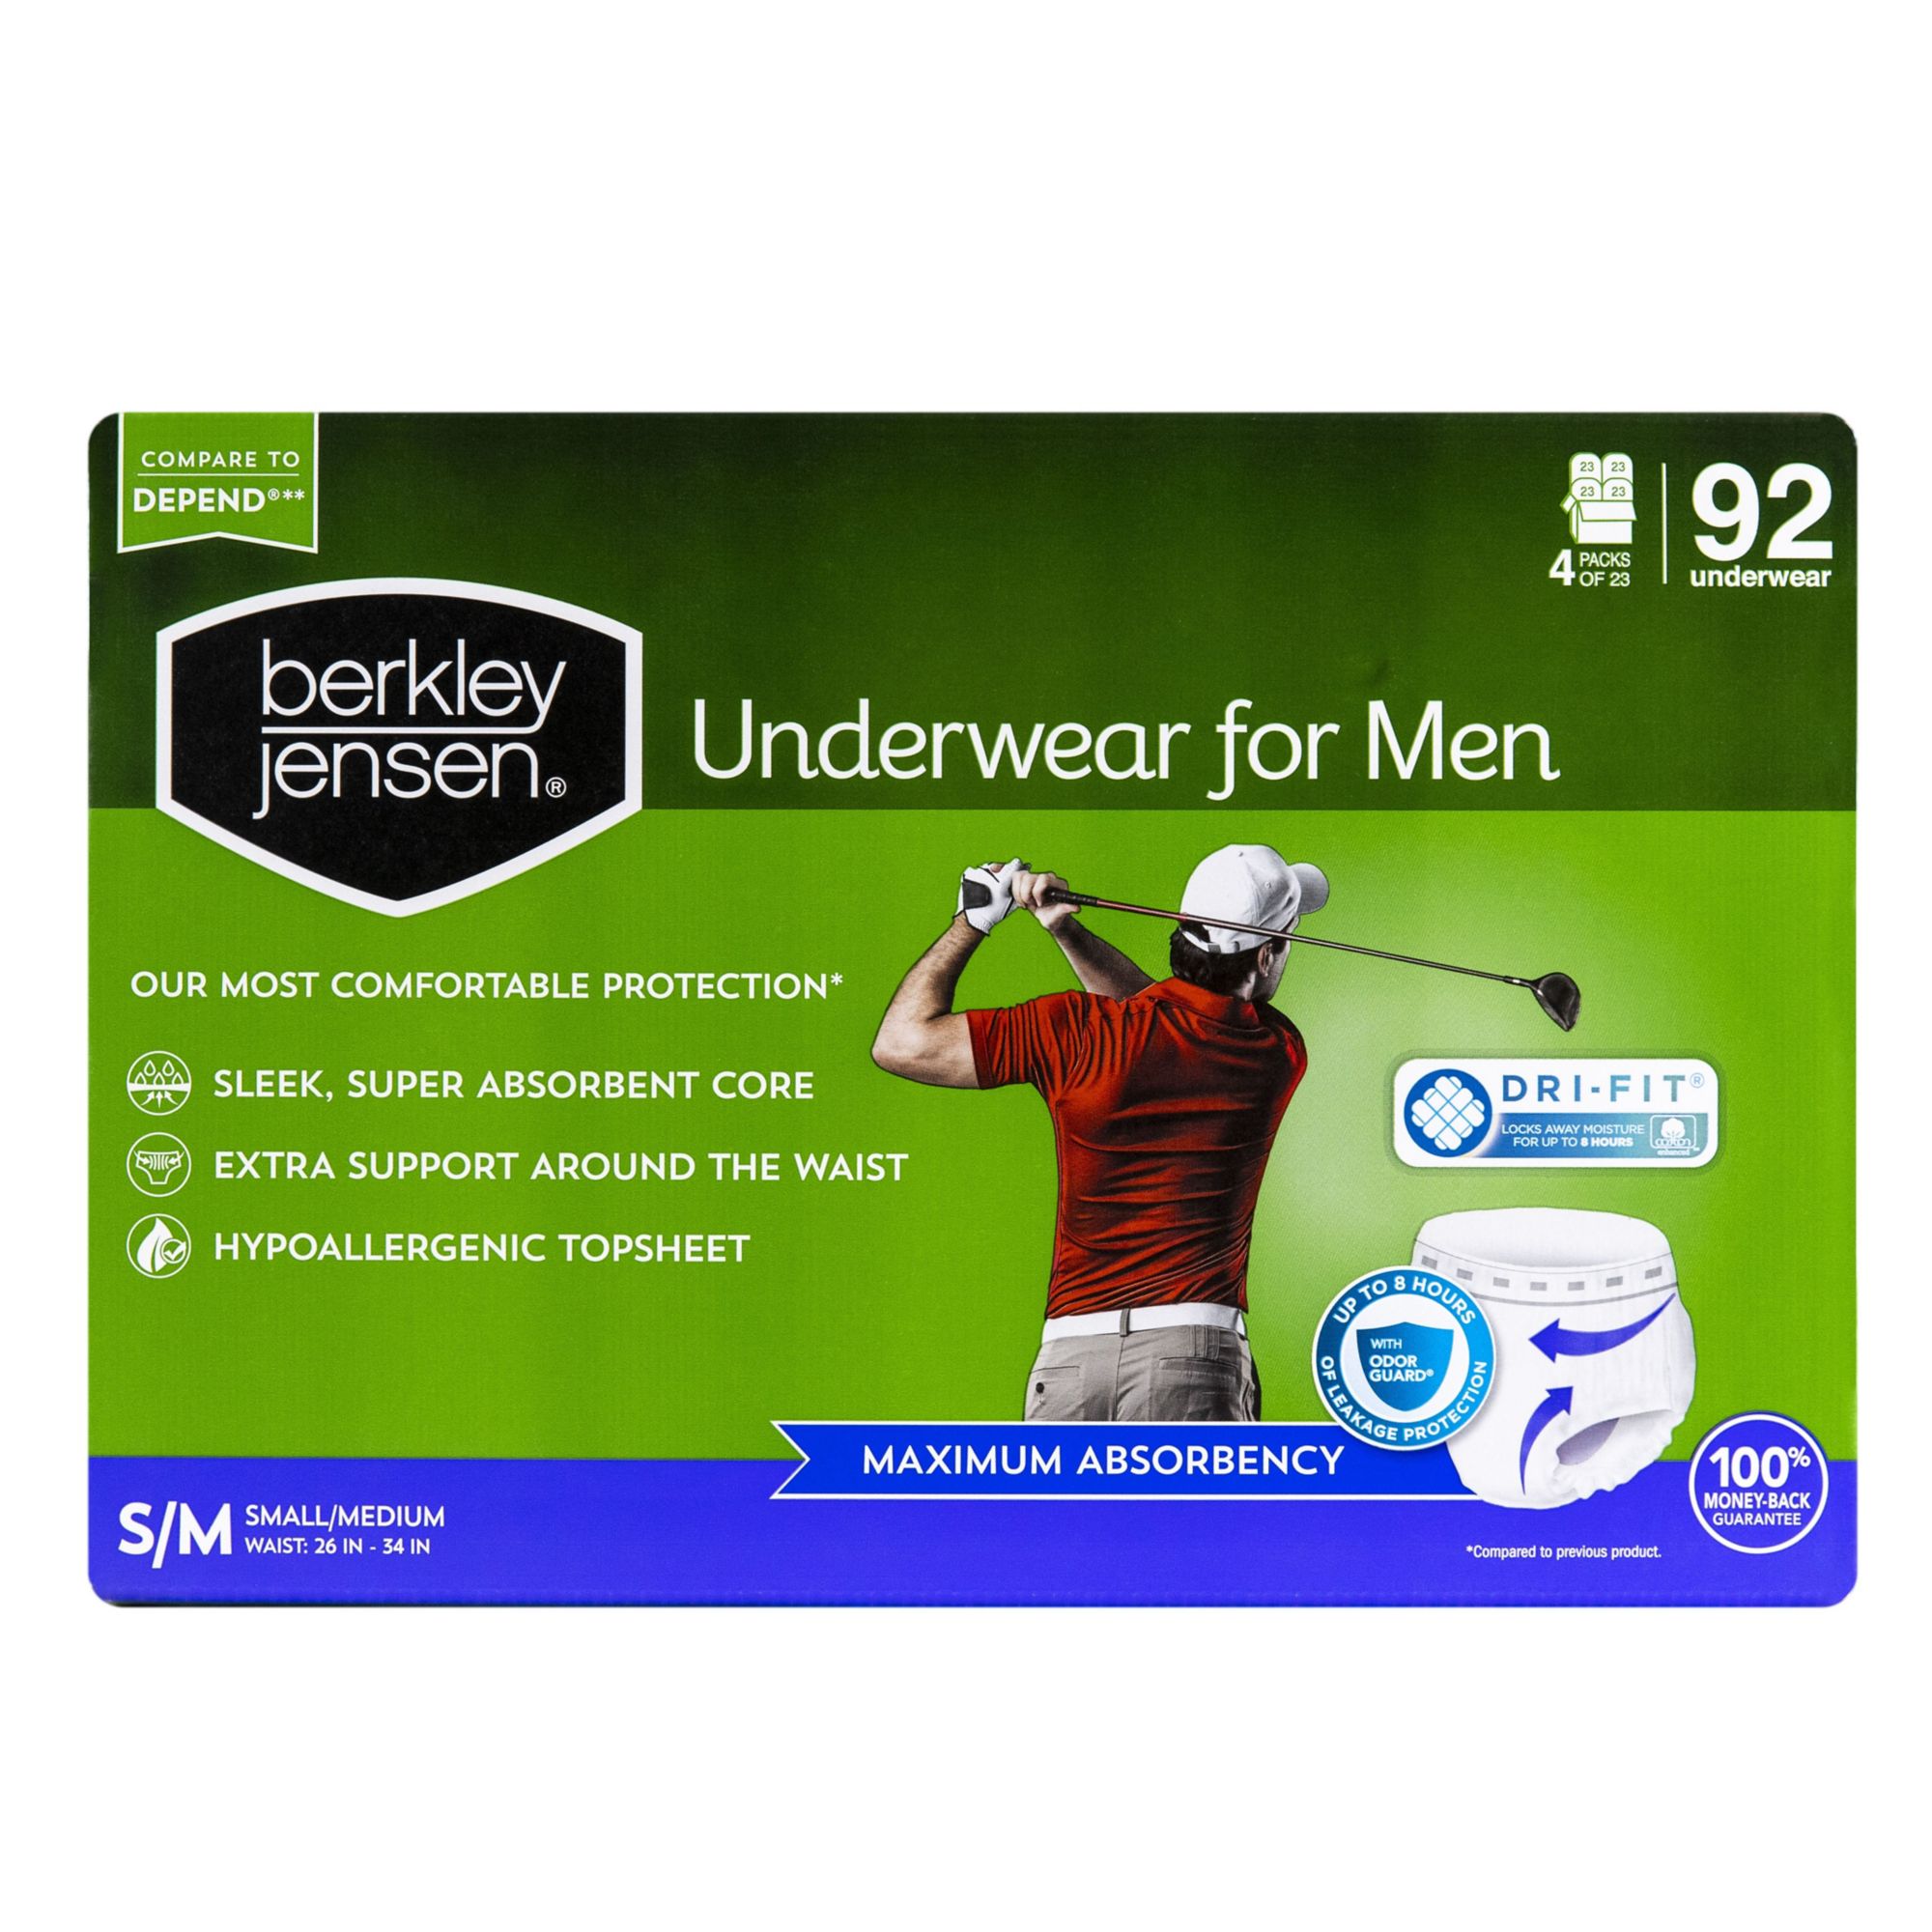 Berkley Jensen Incontinence and Post Partum Underwear for Women